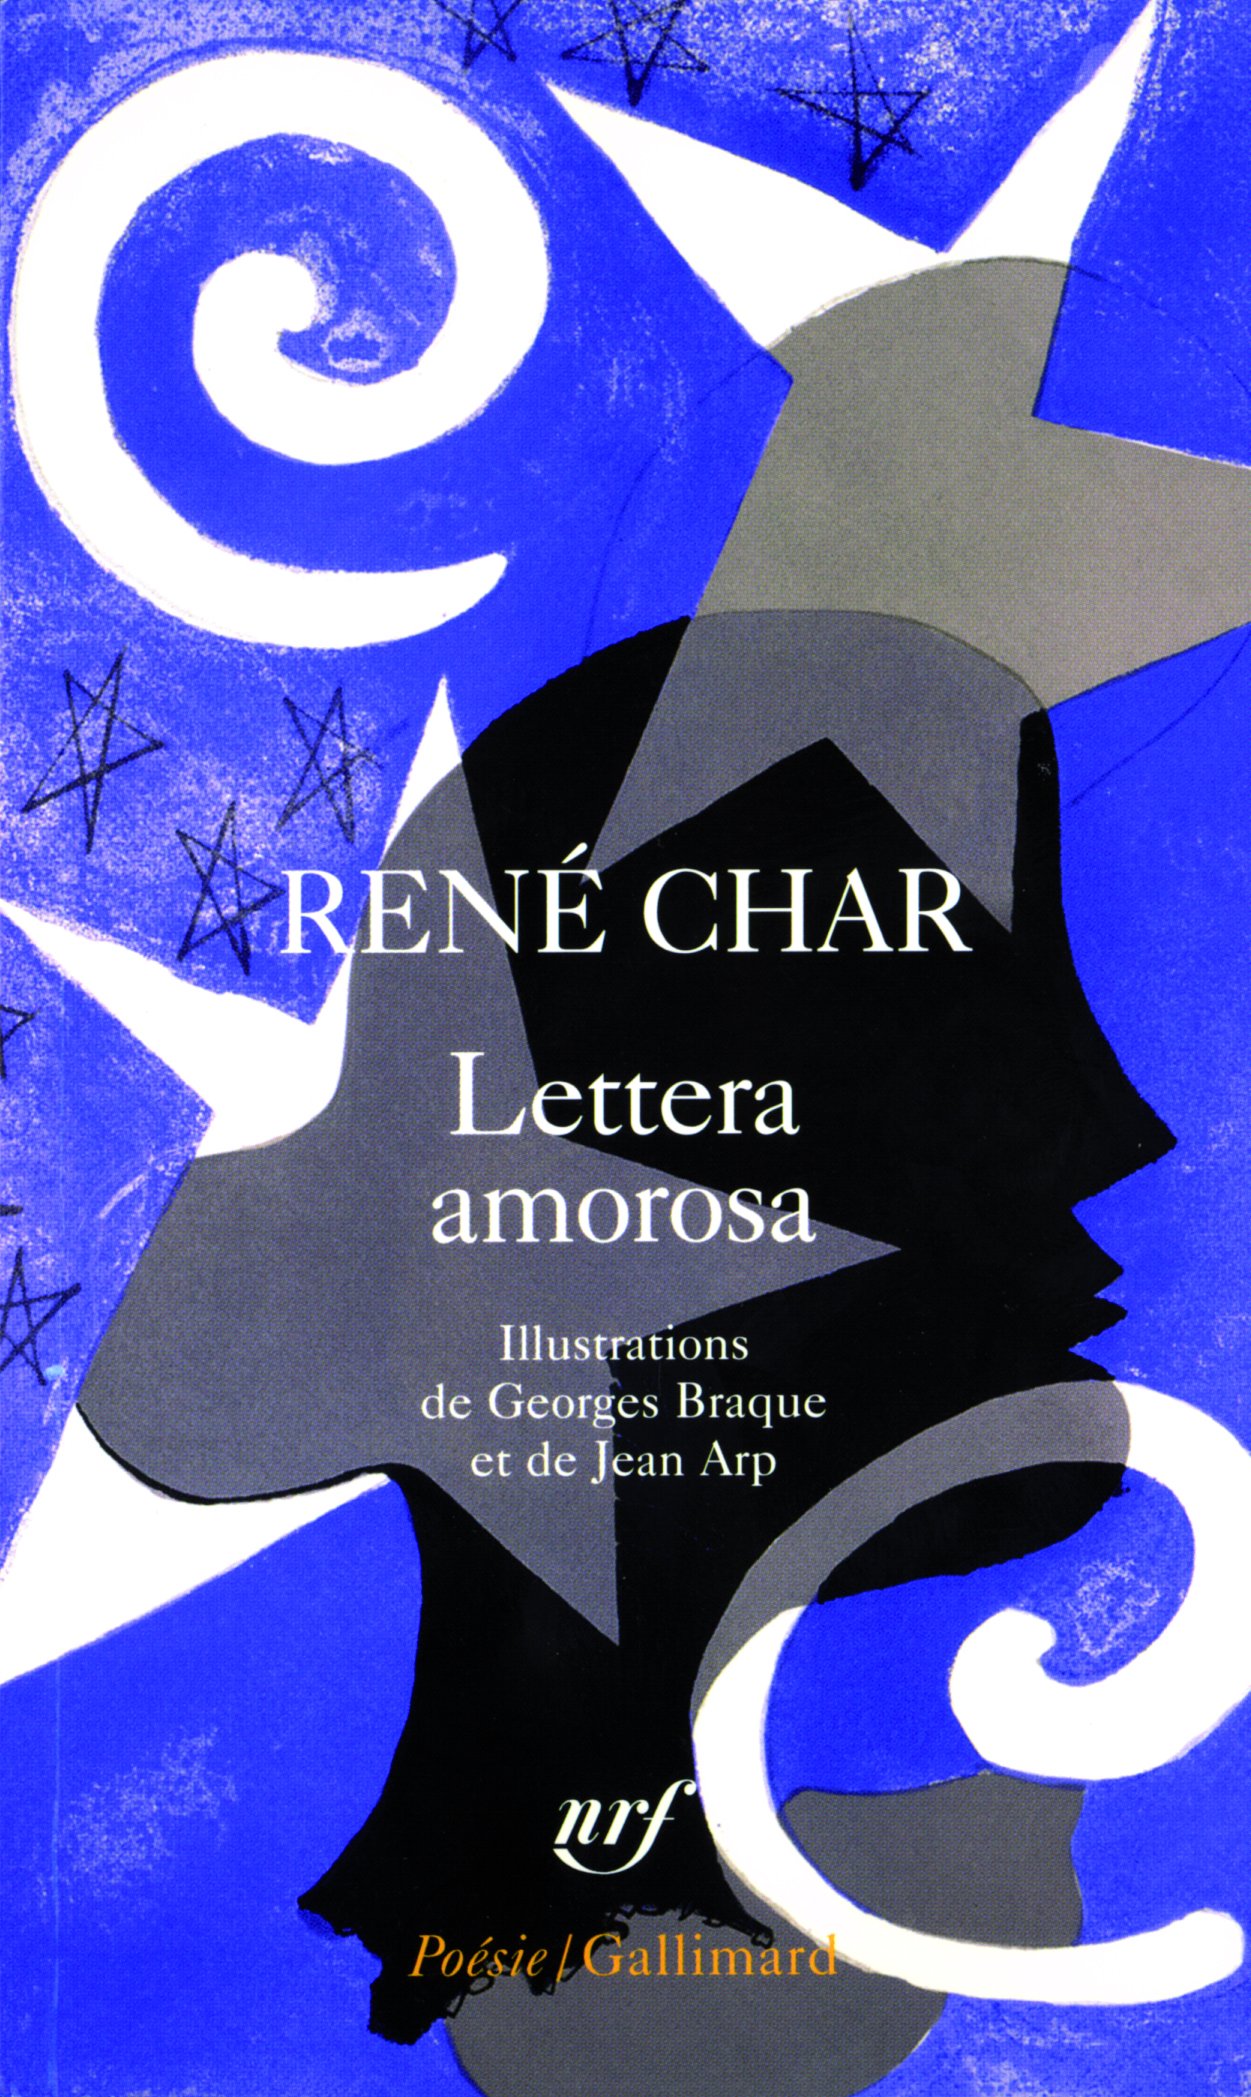 You are currently viewing La LETTERA AMOROSA de René Char: quelques pistes d’analyse pour l’étude de l’ouvrage